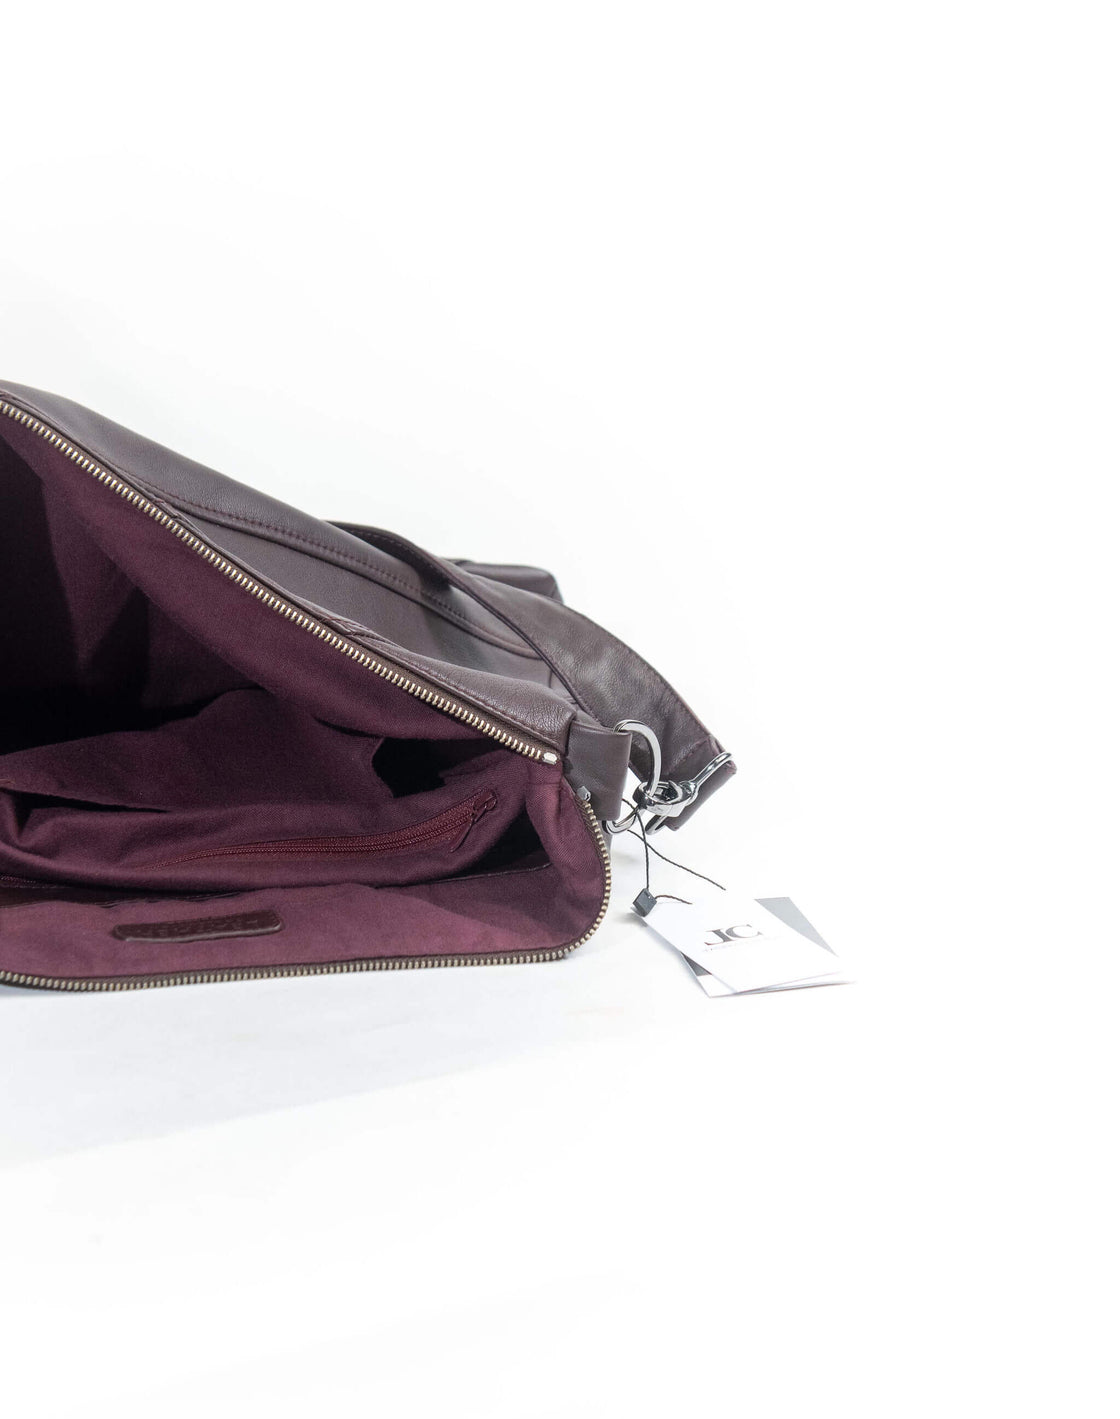 Windi - Floppy Bag